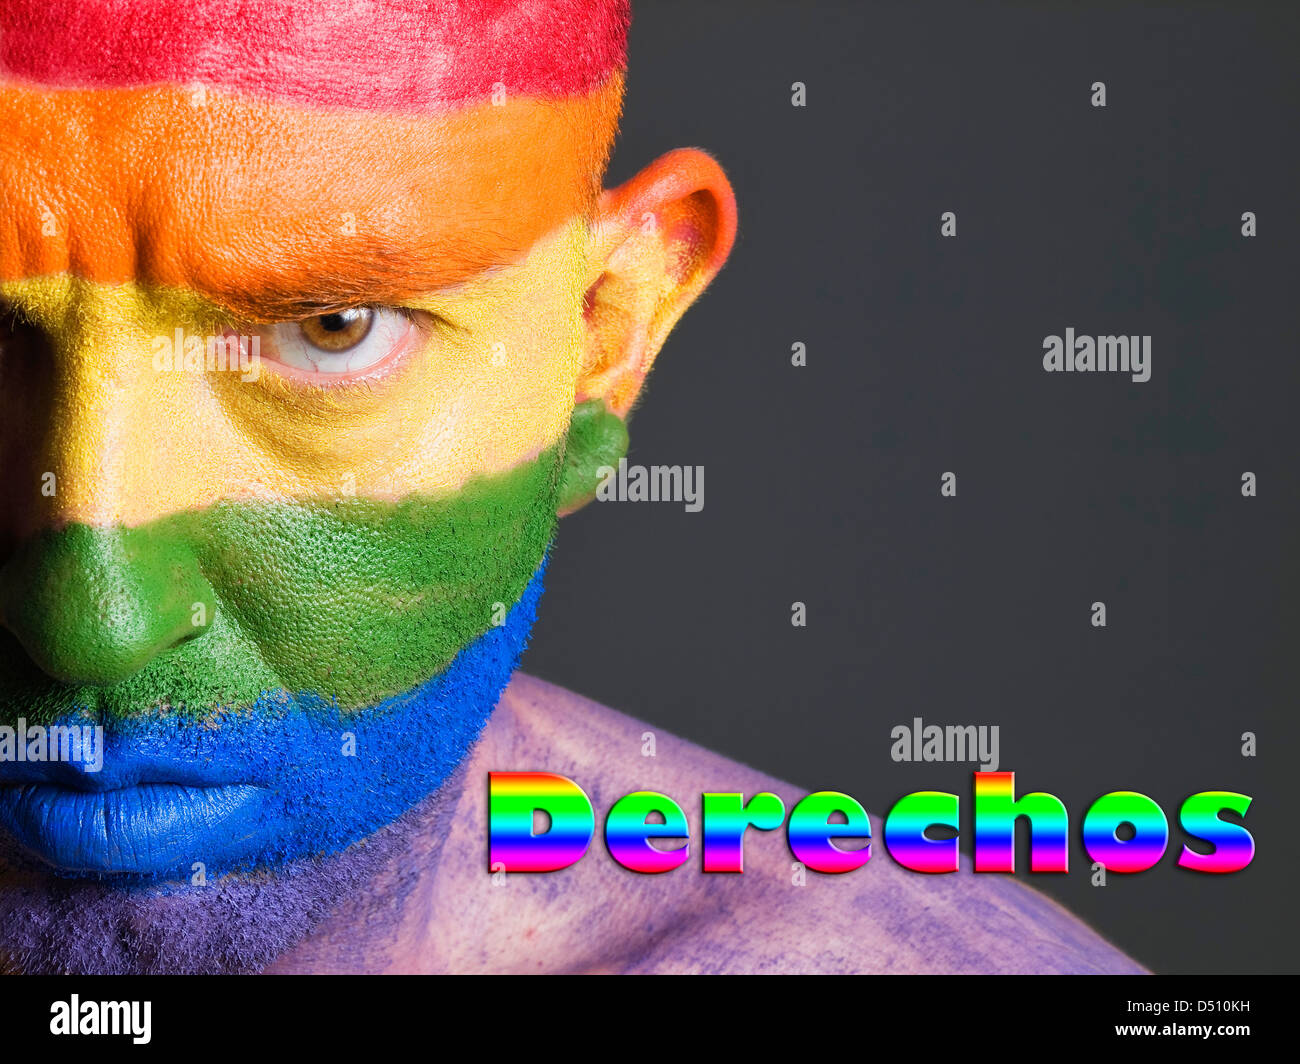 Hombre con la bandera gay pintada en la cara y con expresion seria. La palabra 'derechos' esta escrita en un lado. Stock Photo